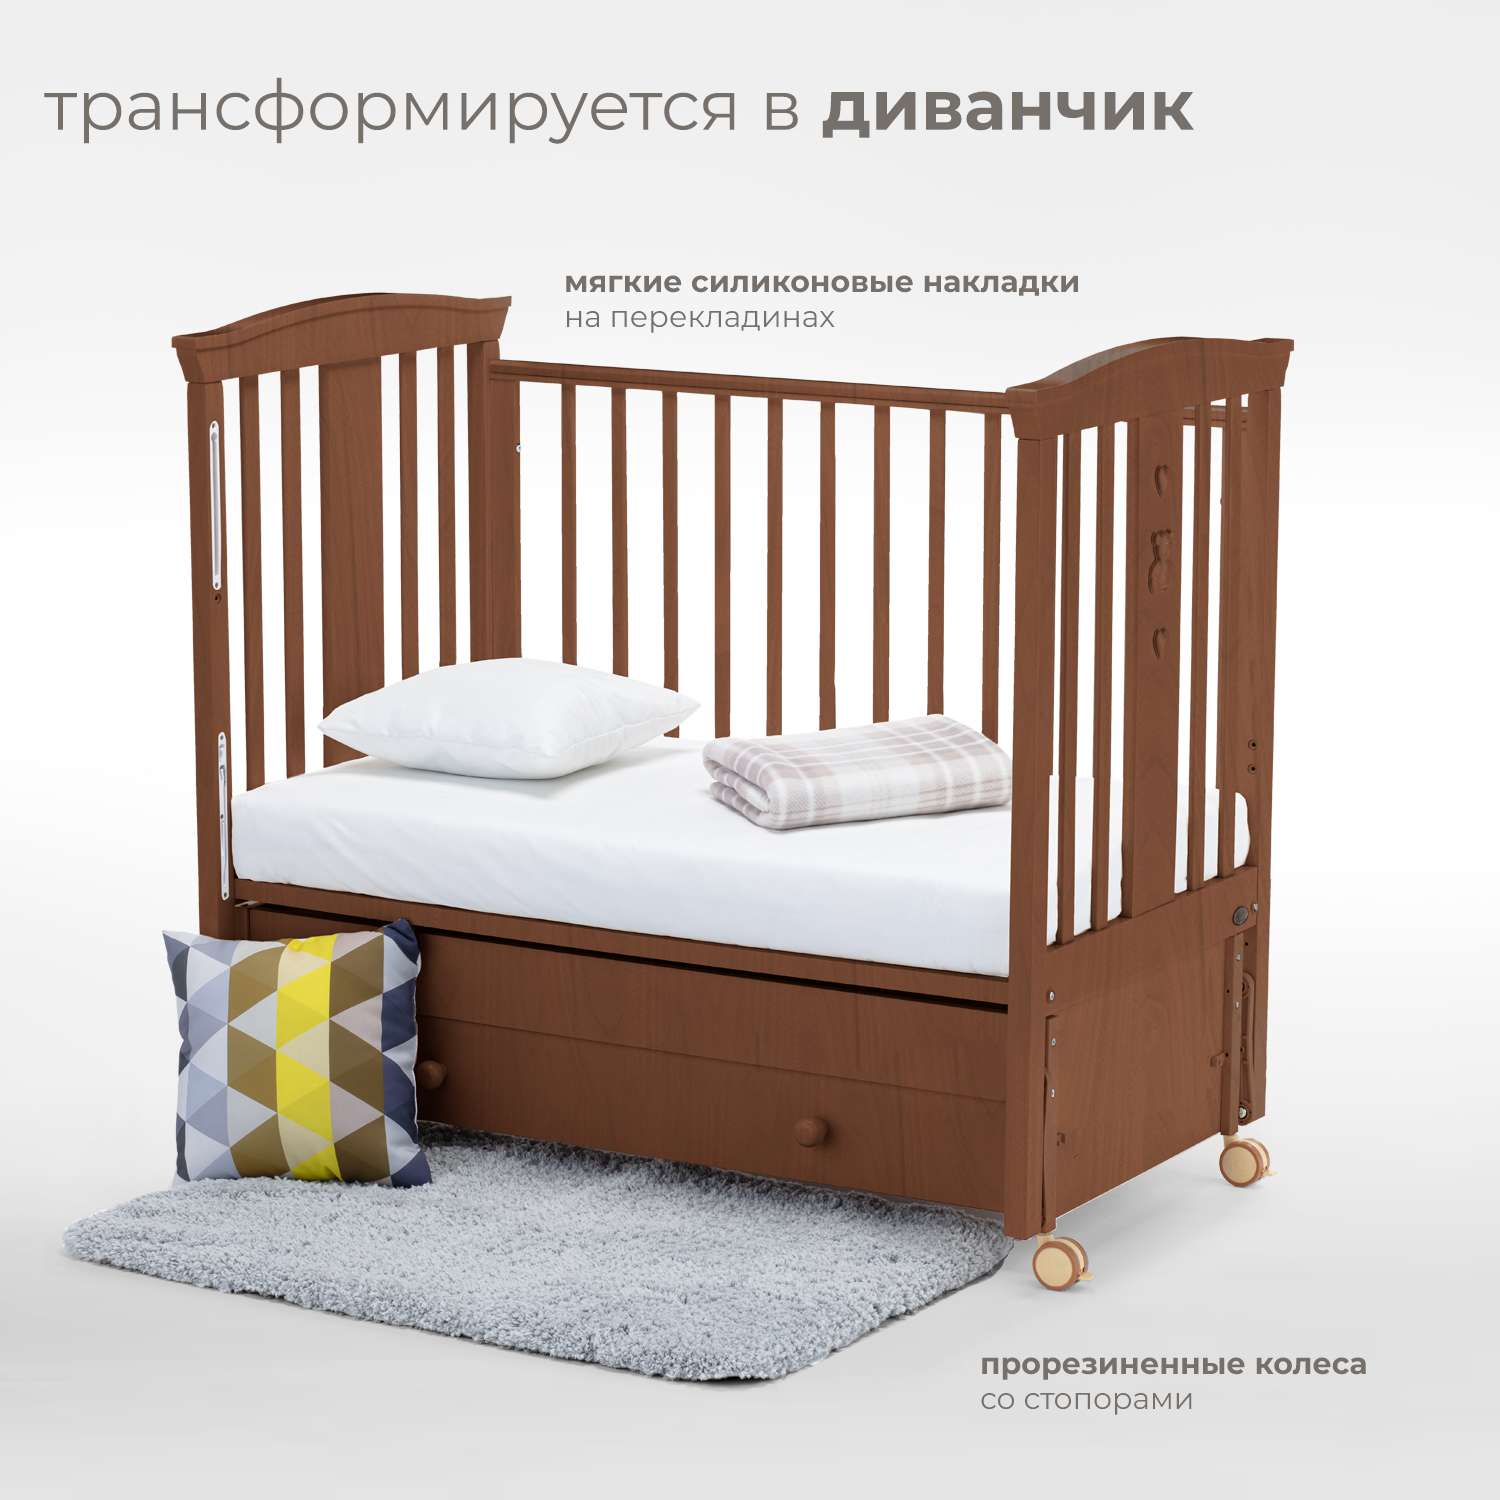 Детская кроватка Nuovita Fasto Swing прямоугольная, продольный маятник (темный орех) - фото 5